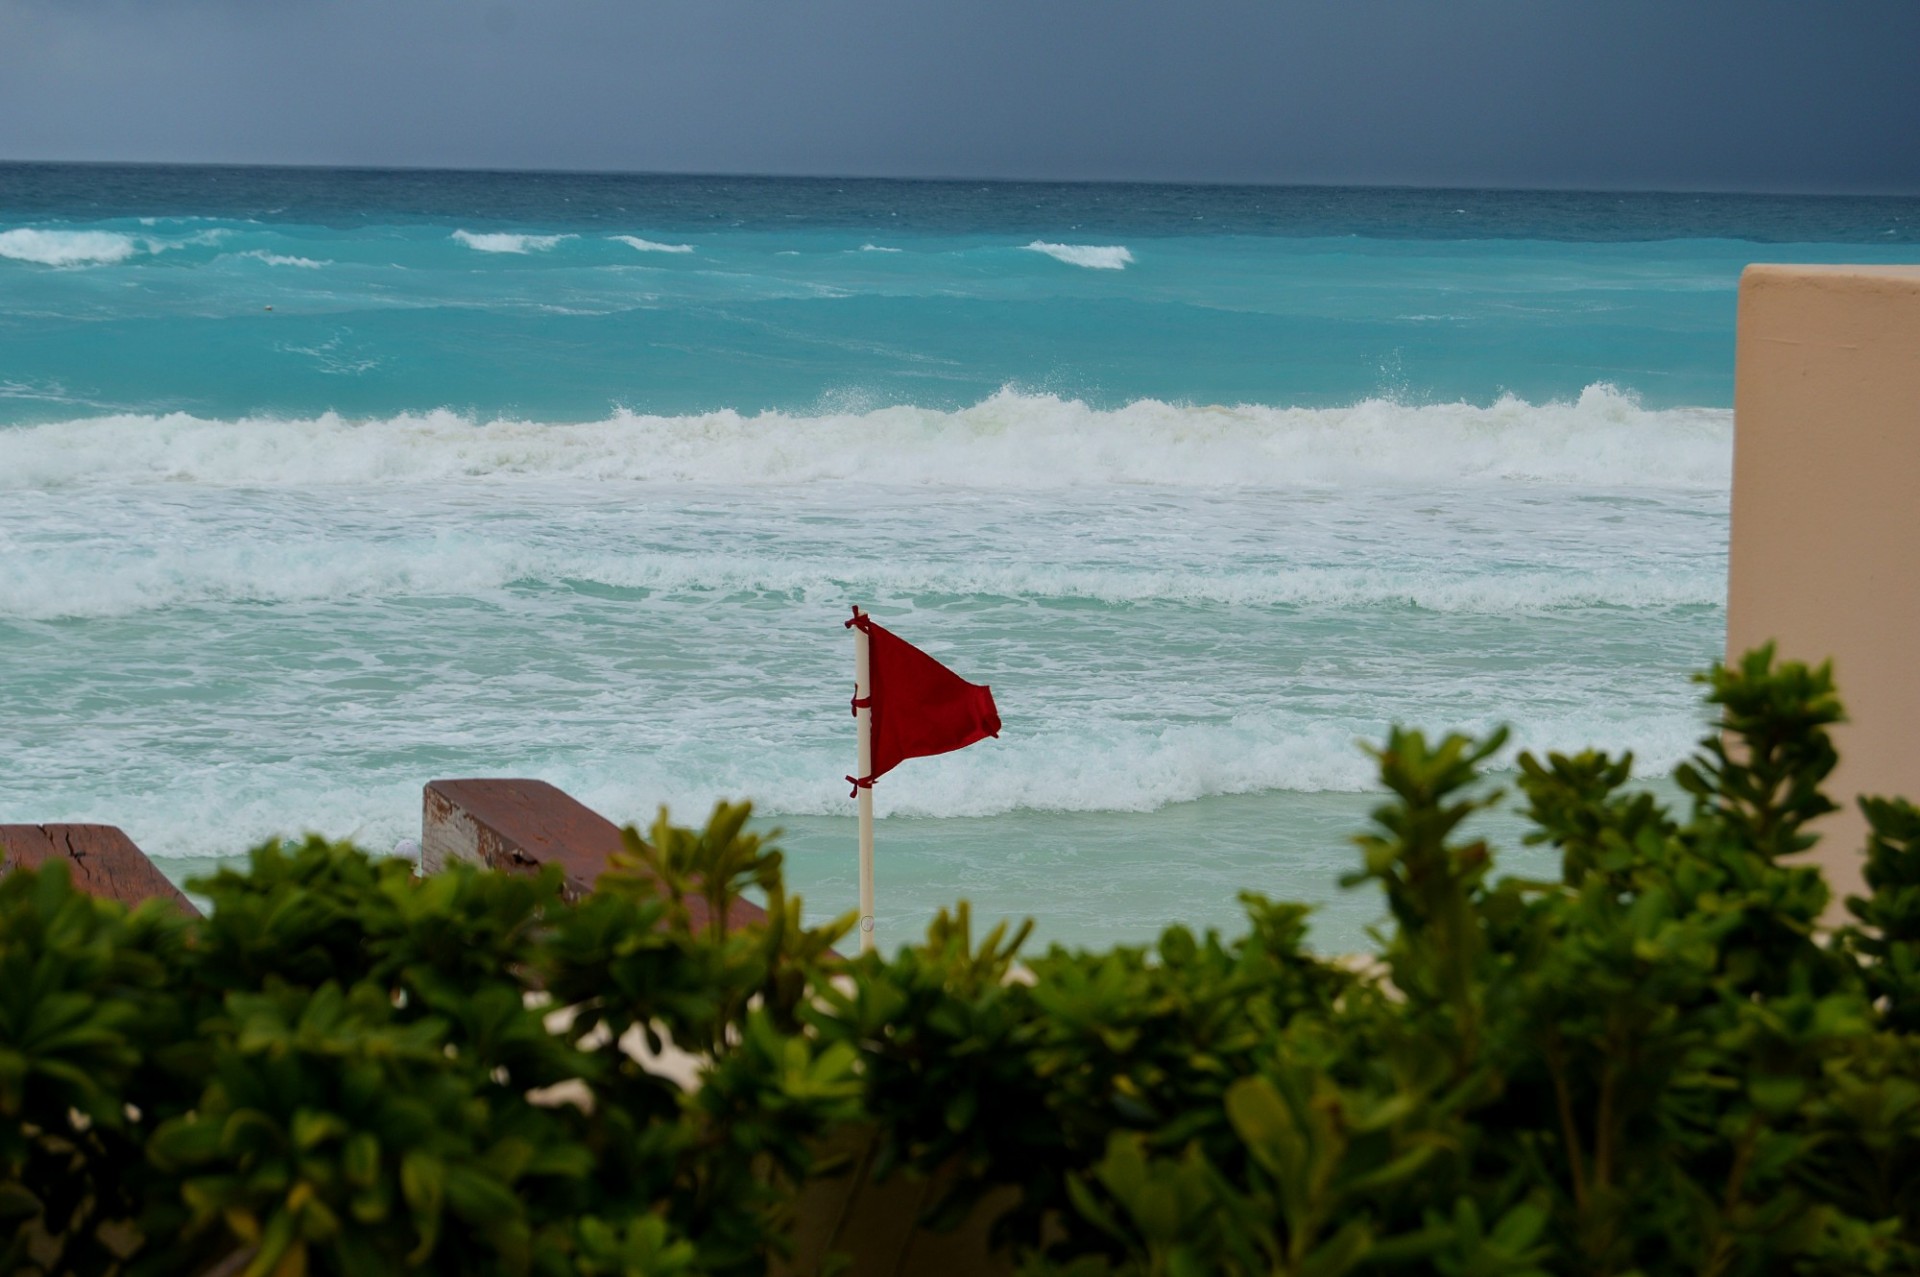 Bandera roja en una playa de agua azul anunciando aguas peligrosas